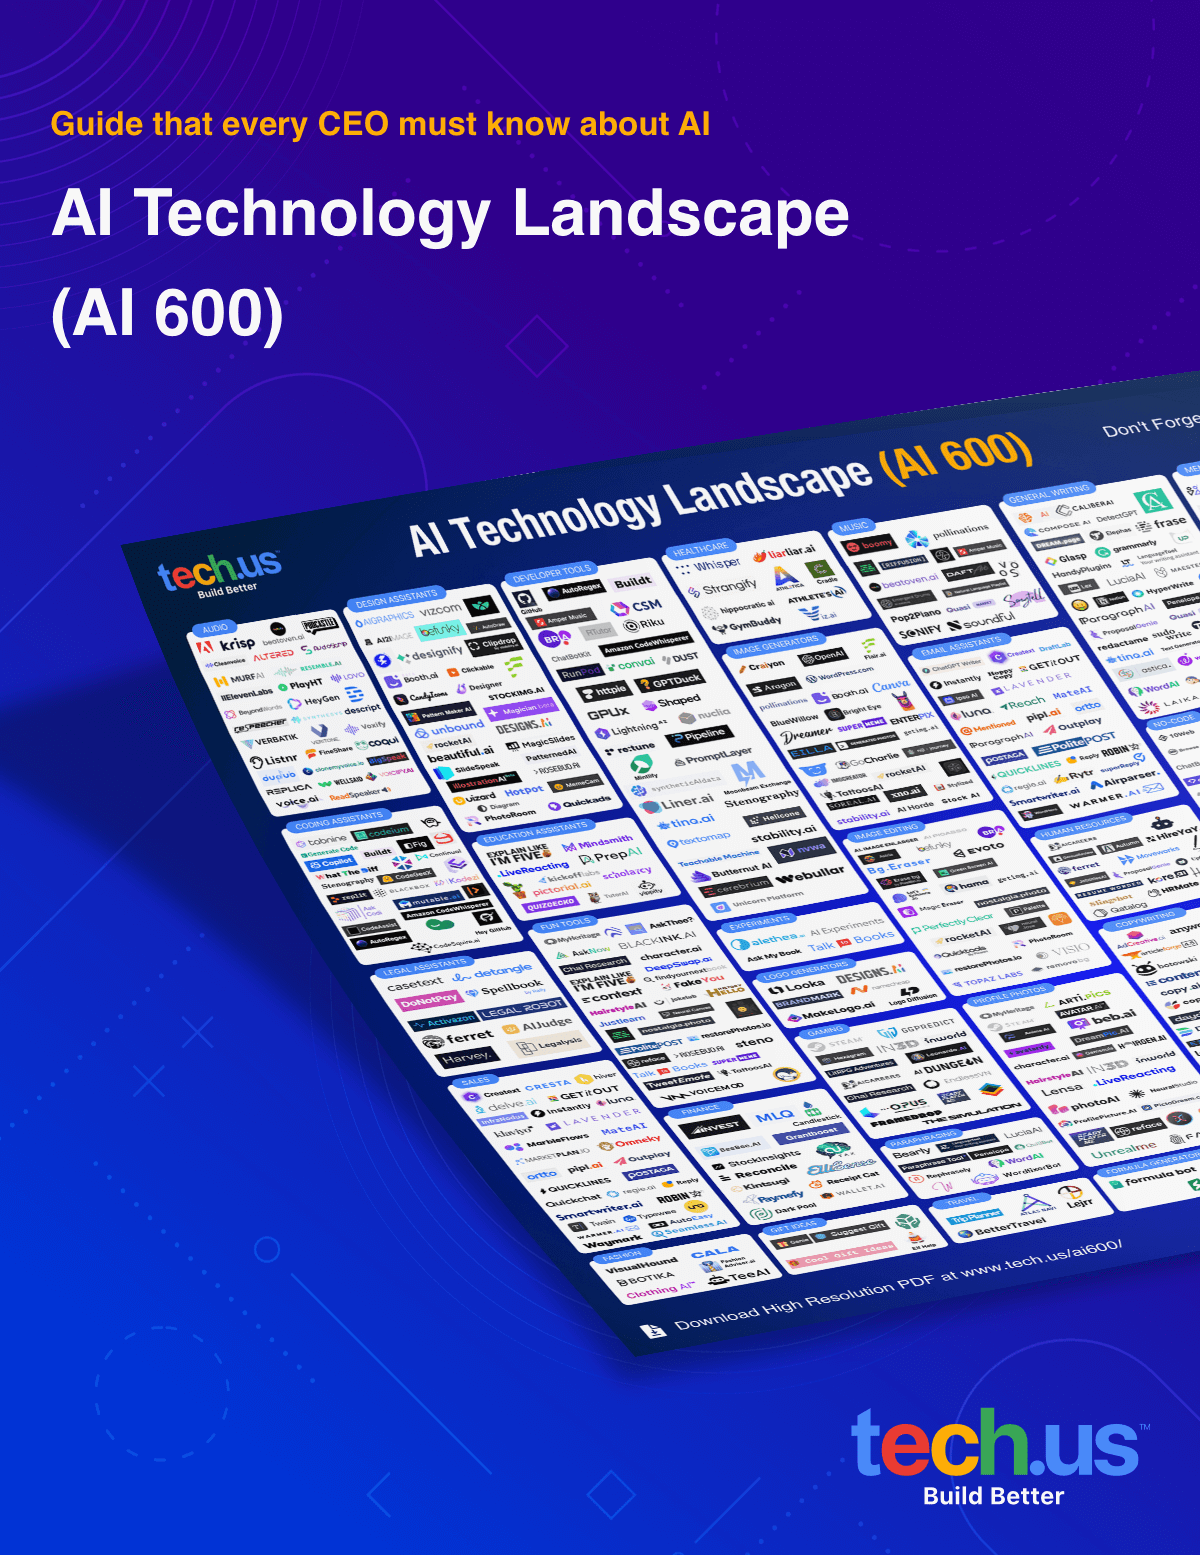 High-Res AI Technology Landscape (AI 600) Document